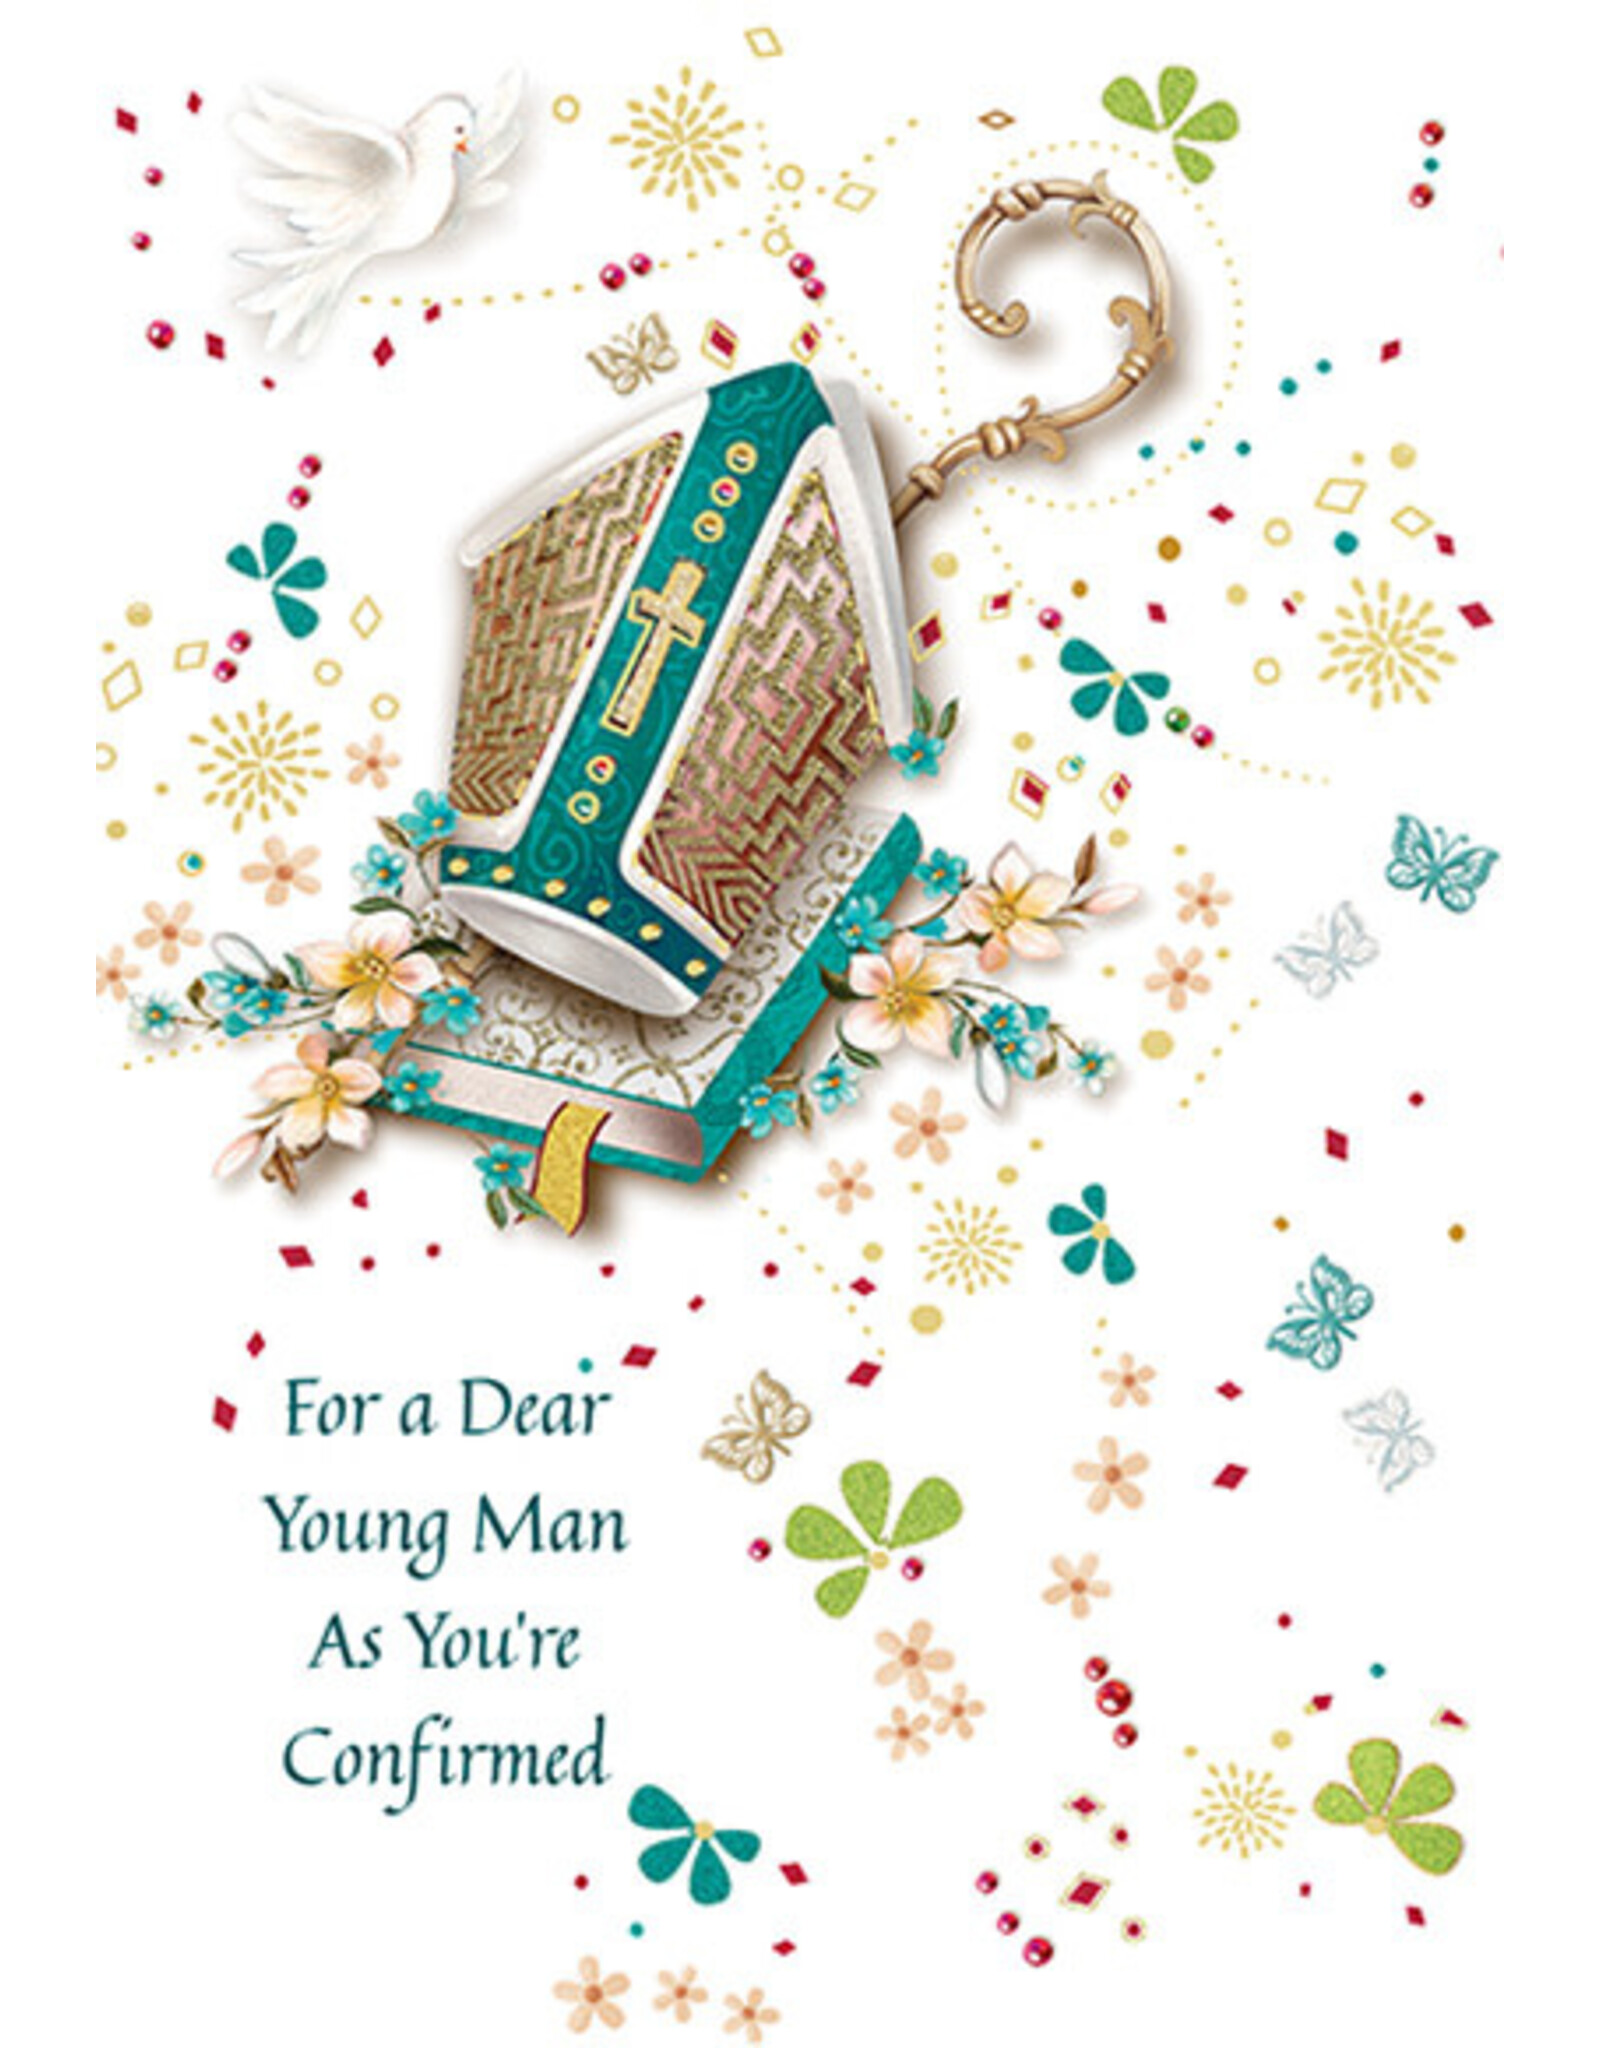 Greetings of Faith Card - Confirmation (Boy), Dear Young Man